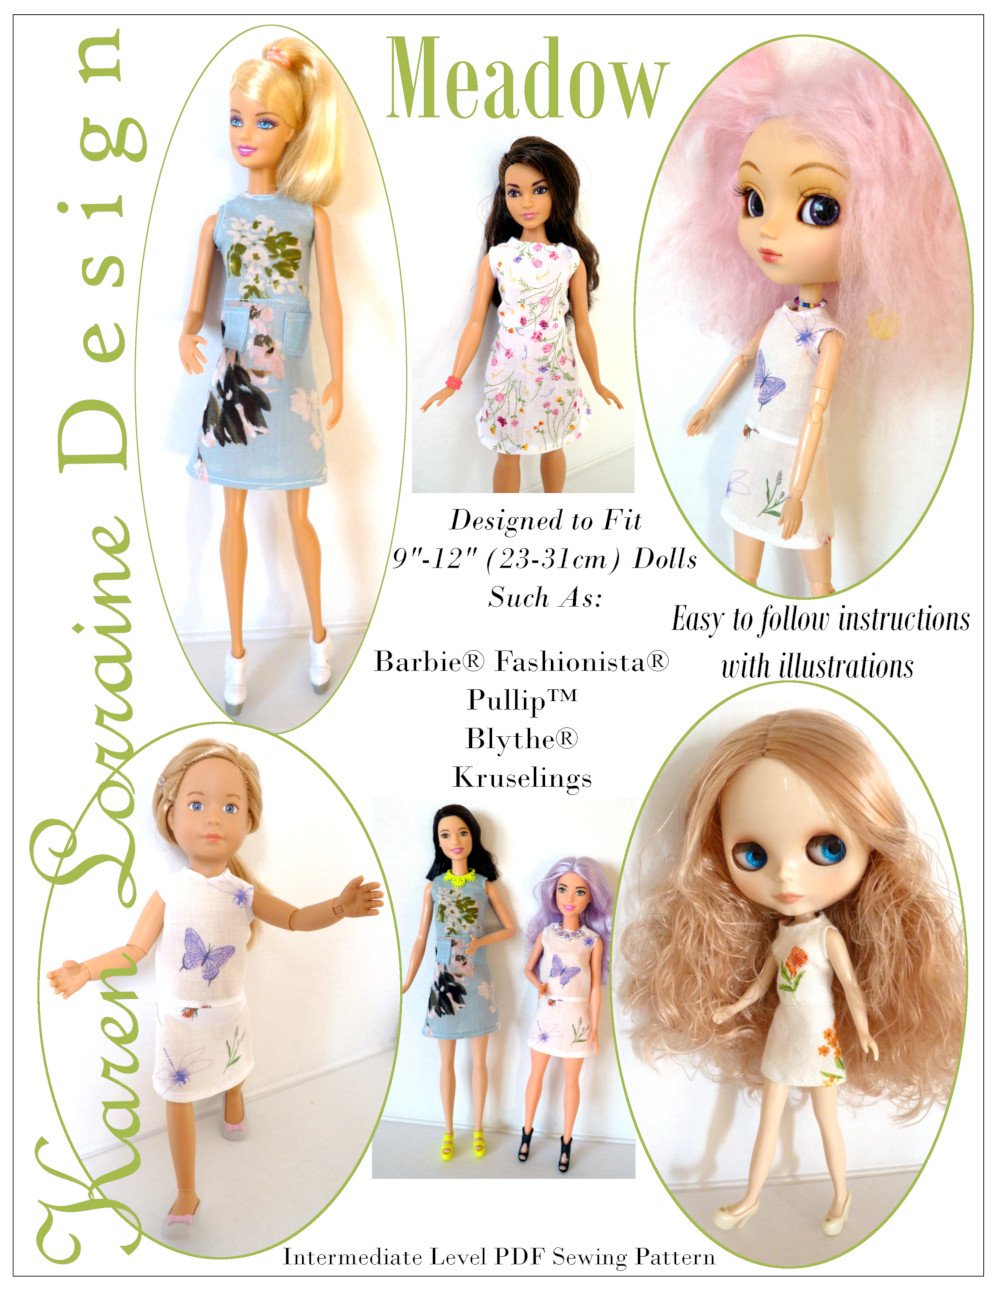 Karen Lorraine Design Meadow Doll Clothes Pattern 9-12 inch Fashion Dolls